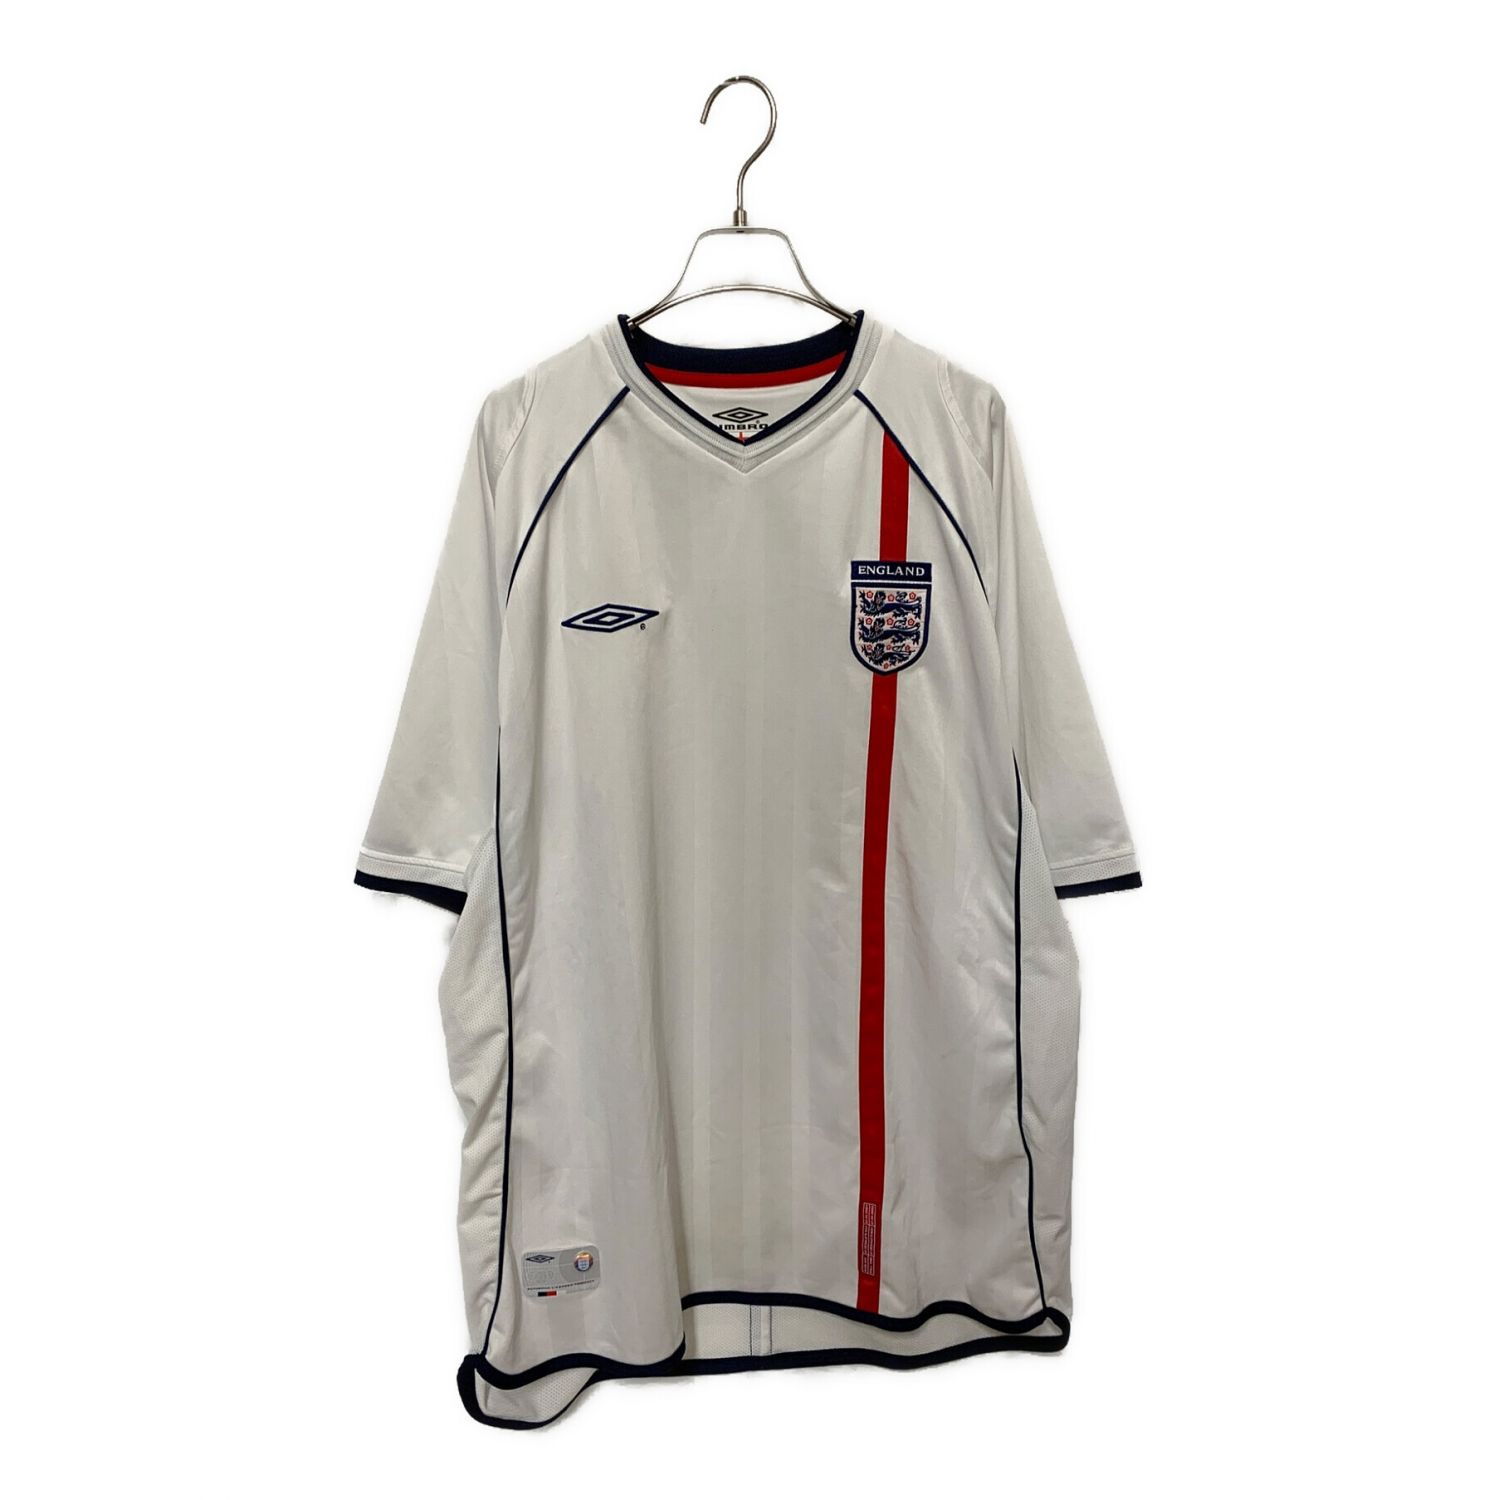 UMBRO (アンブロ) 00'sトレーニングシャツ メンズ SIZE XL ホワイト